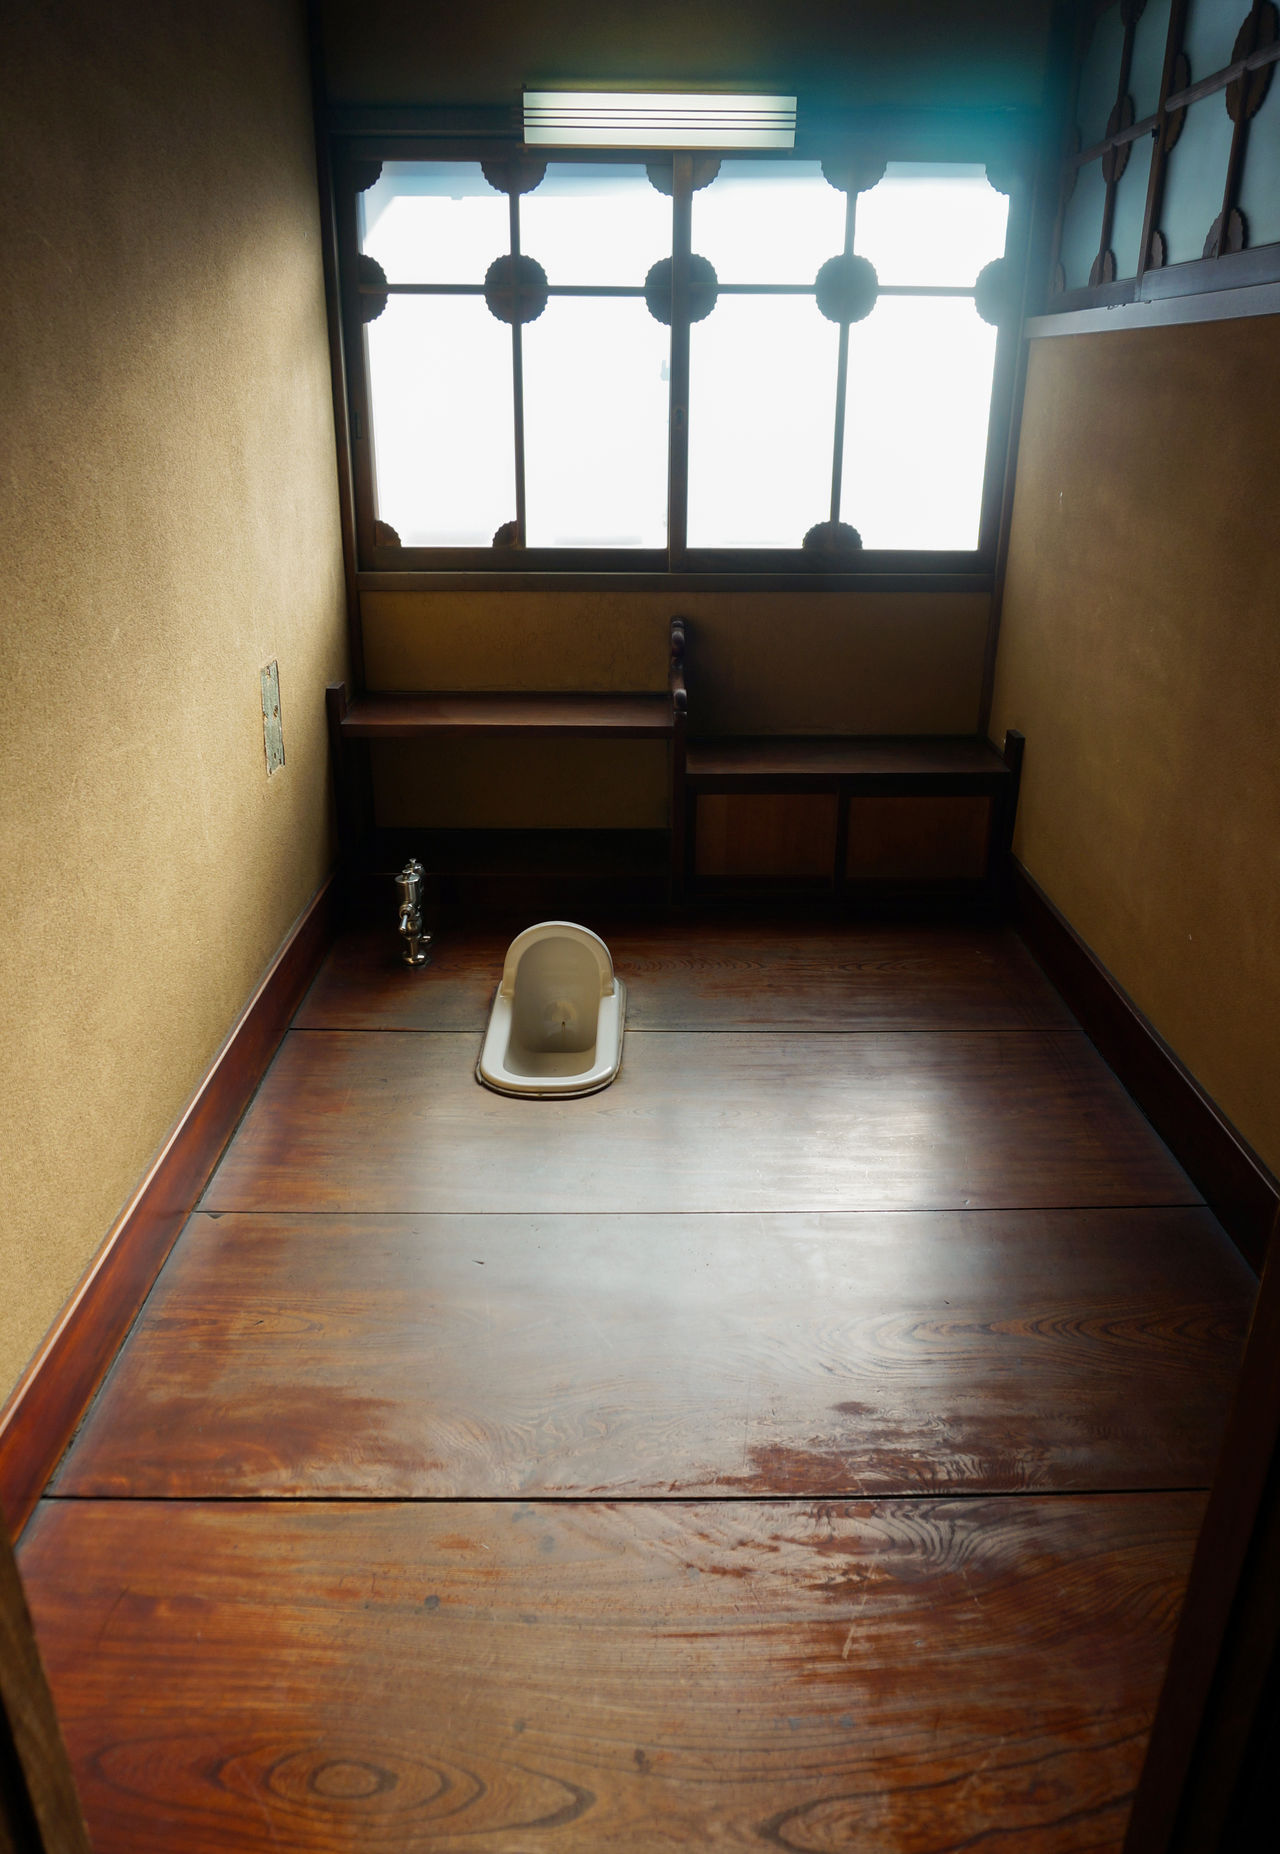 japan in Public toilet